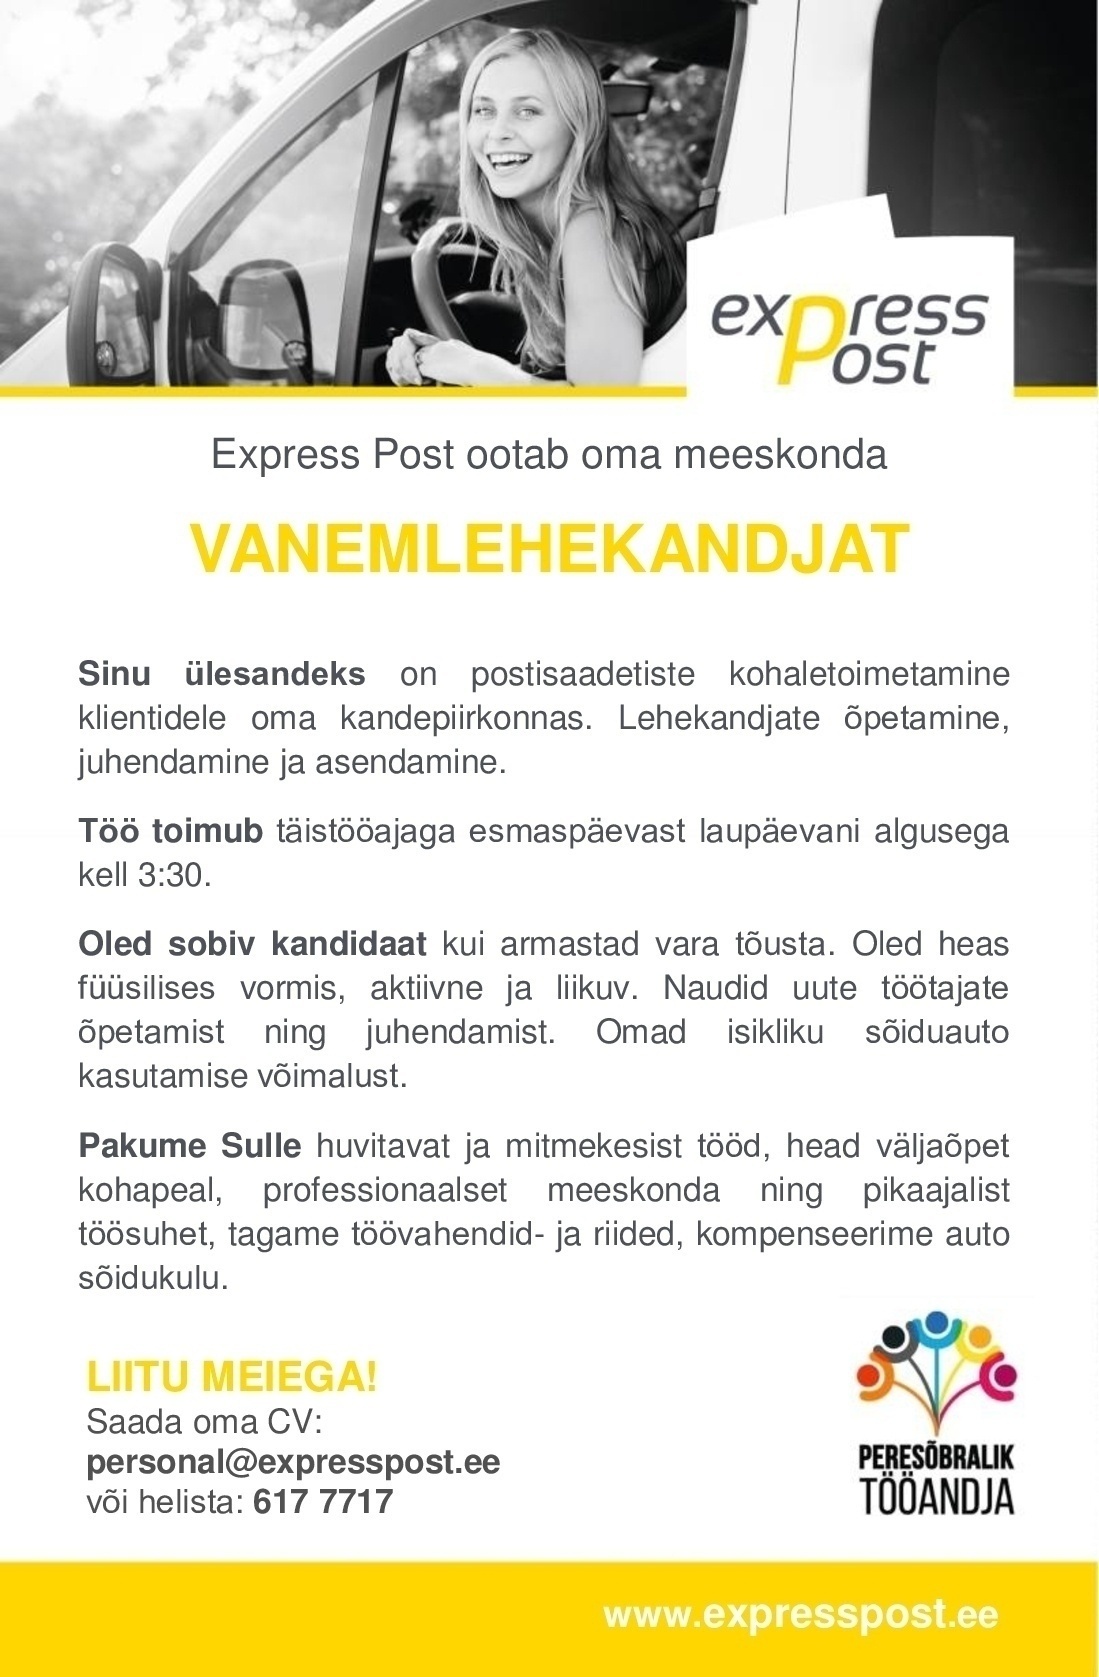 Express Post AS Vanemlehekandja Tallinnasse